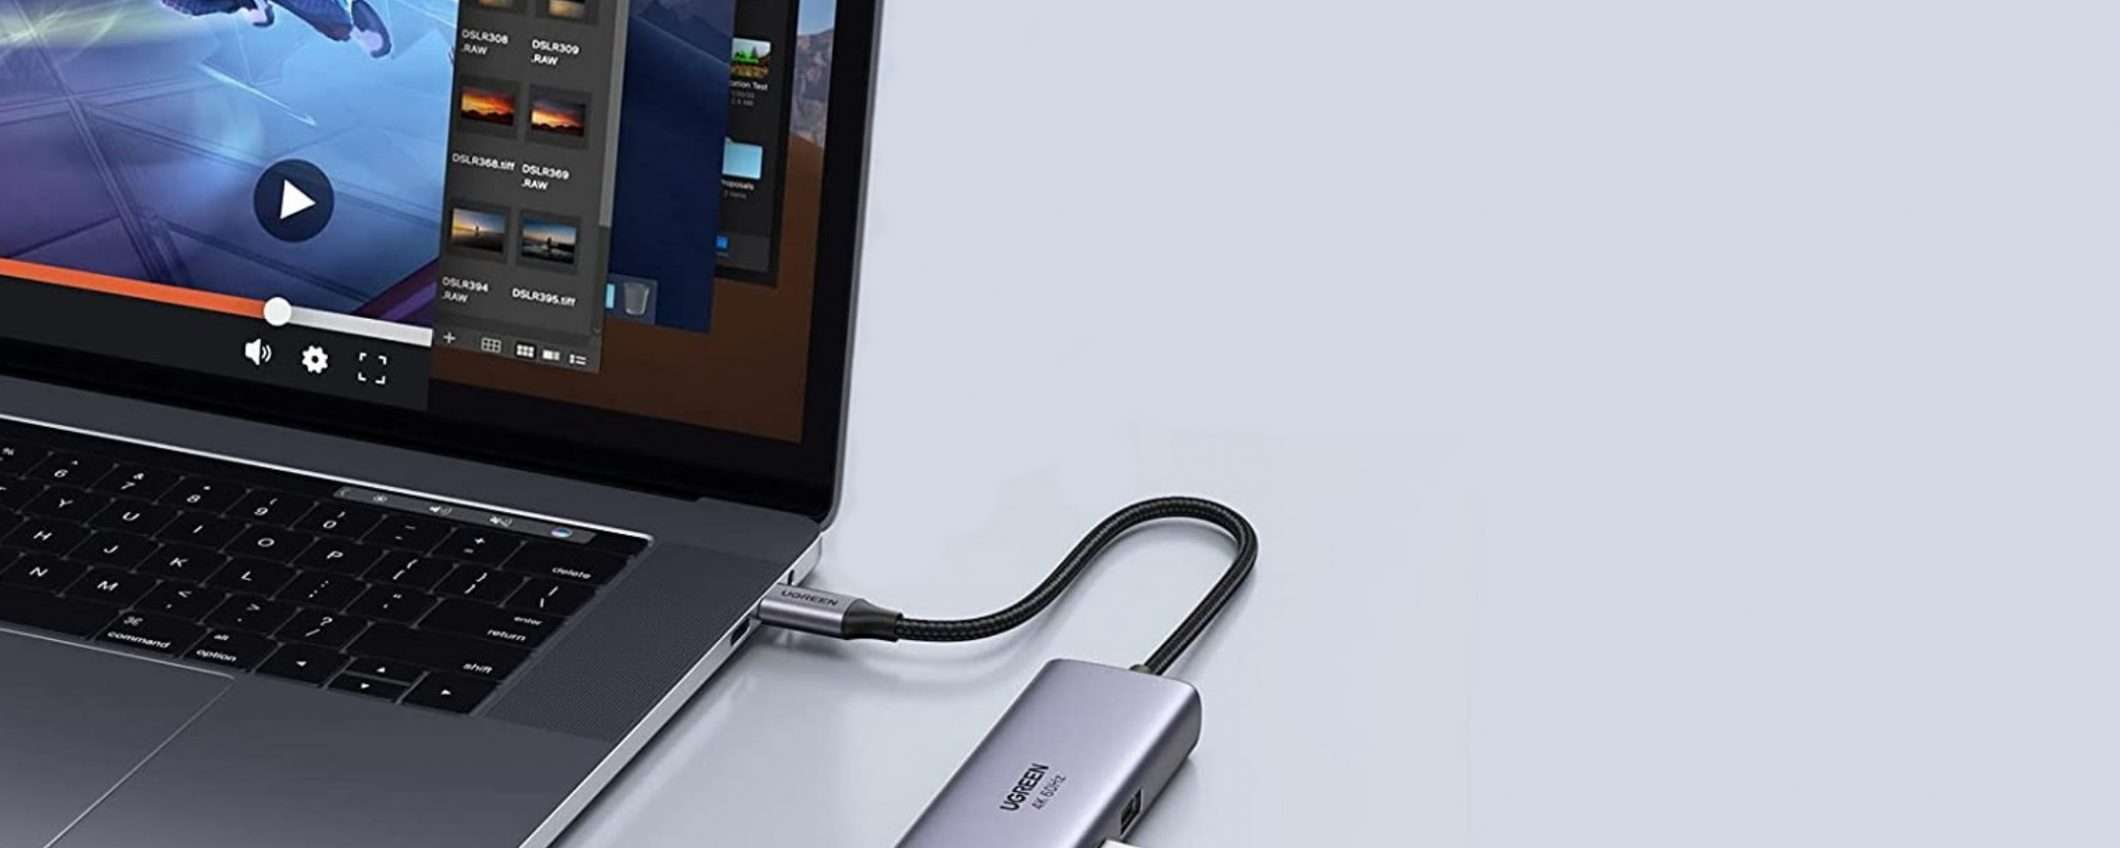 Tutta la connettività che ti serve nel palmo di una mano grazie all'HUB USB-C